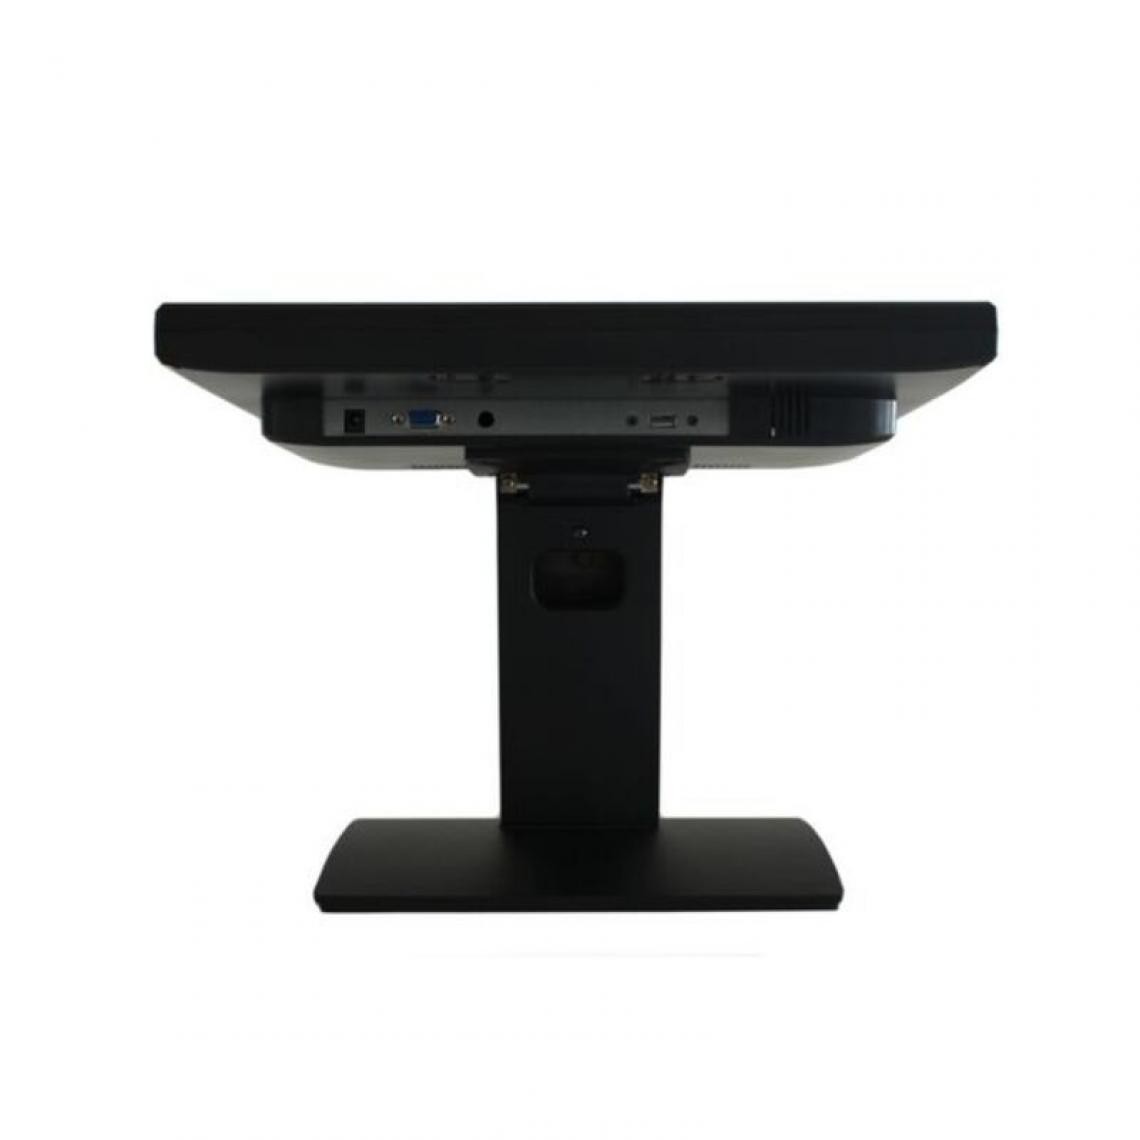 Inconnu - Moniteur à Ecran Tactile approx! APPMT15W5 15`` TFT VGA Noir - Moniteur PC